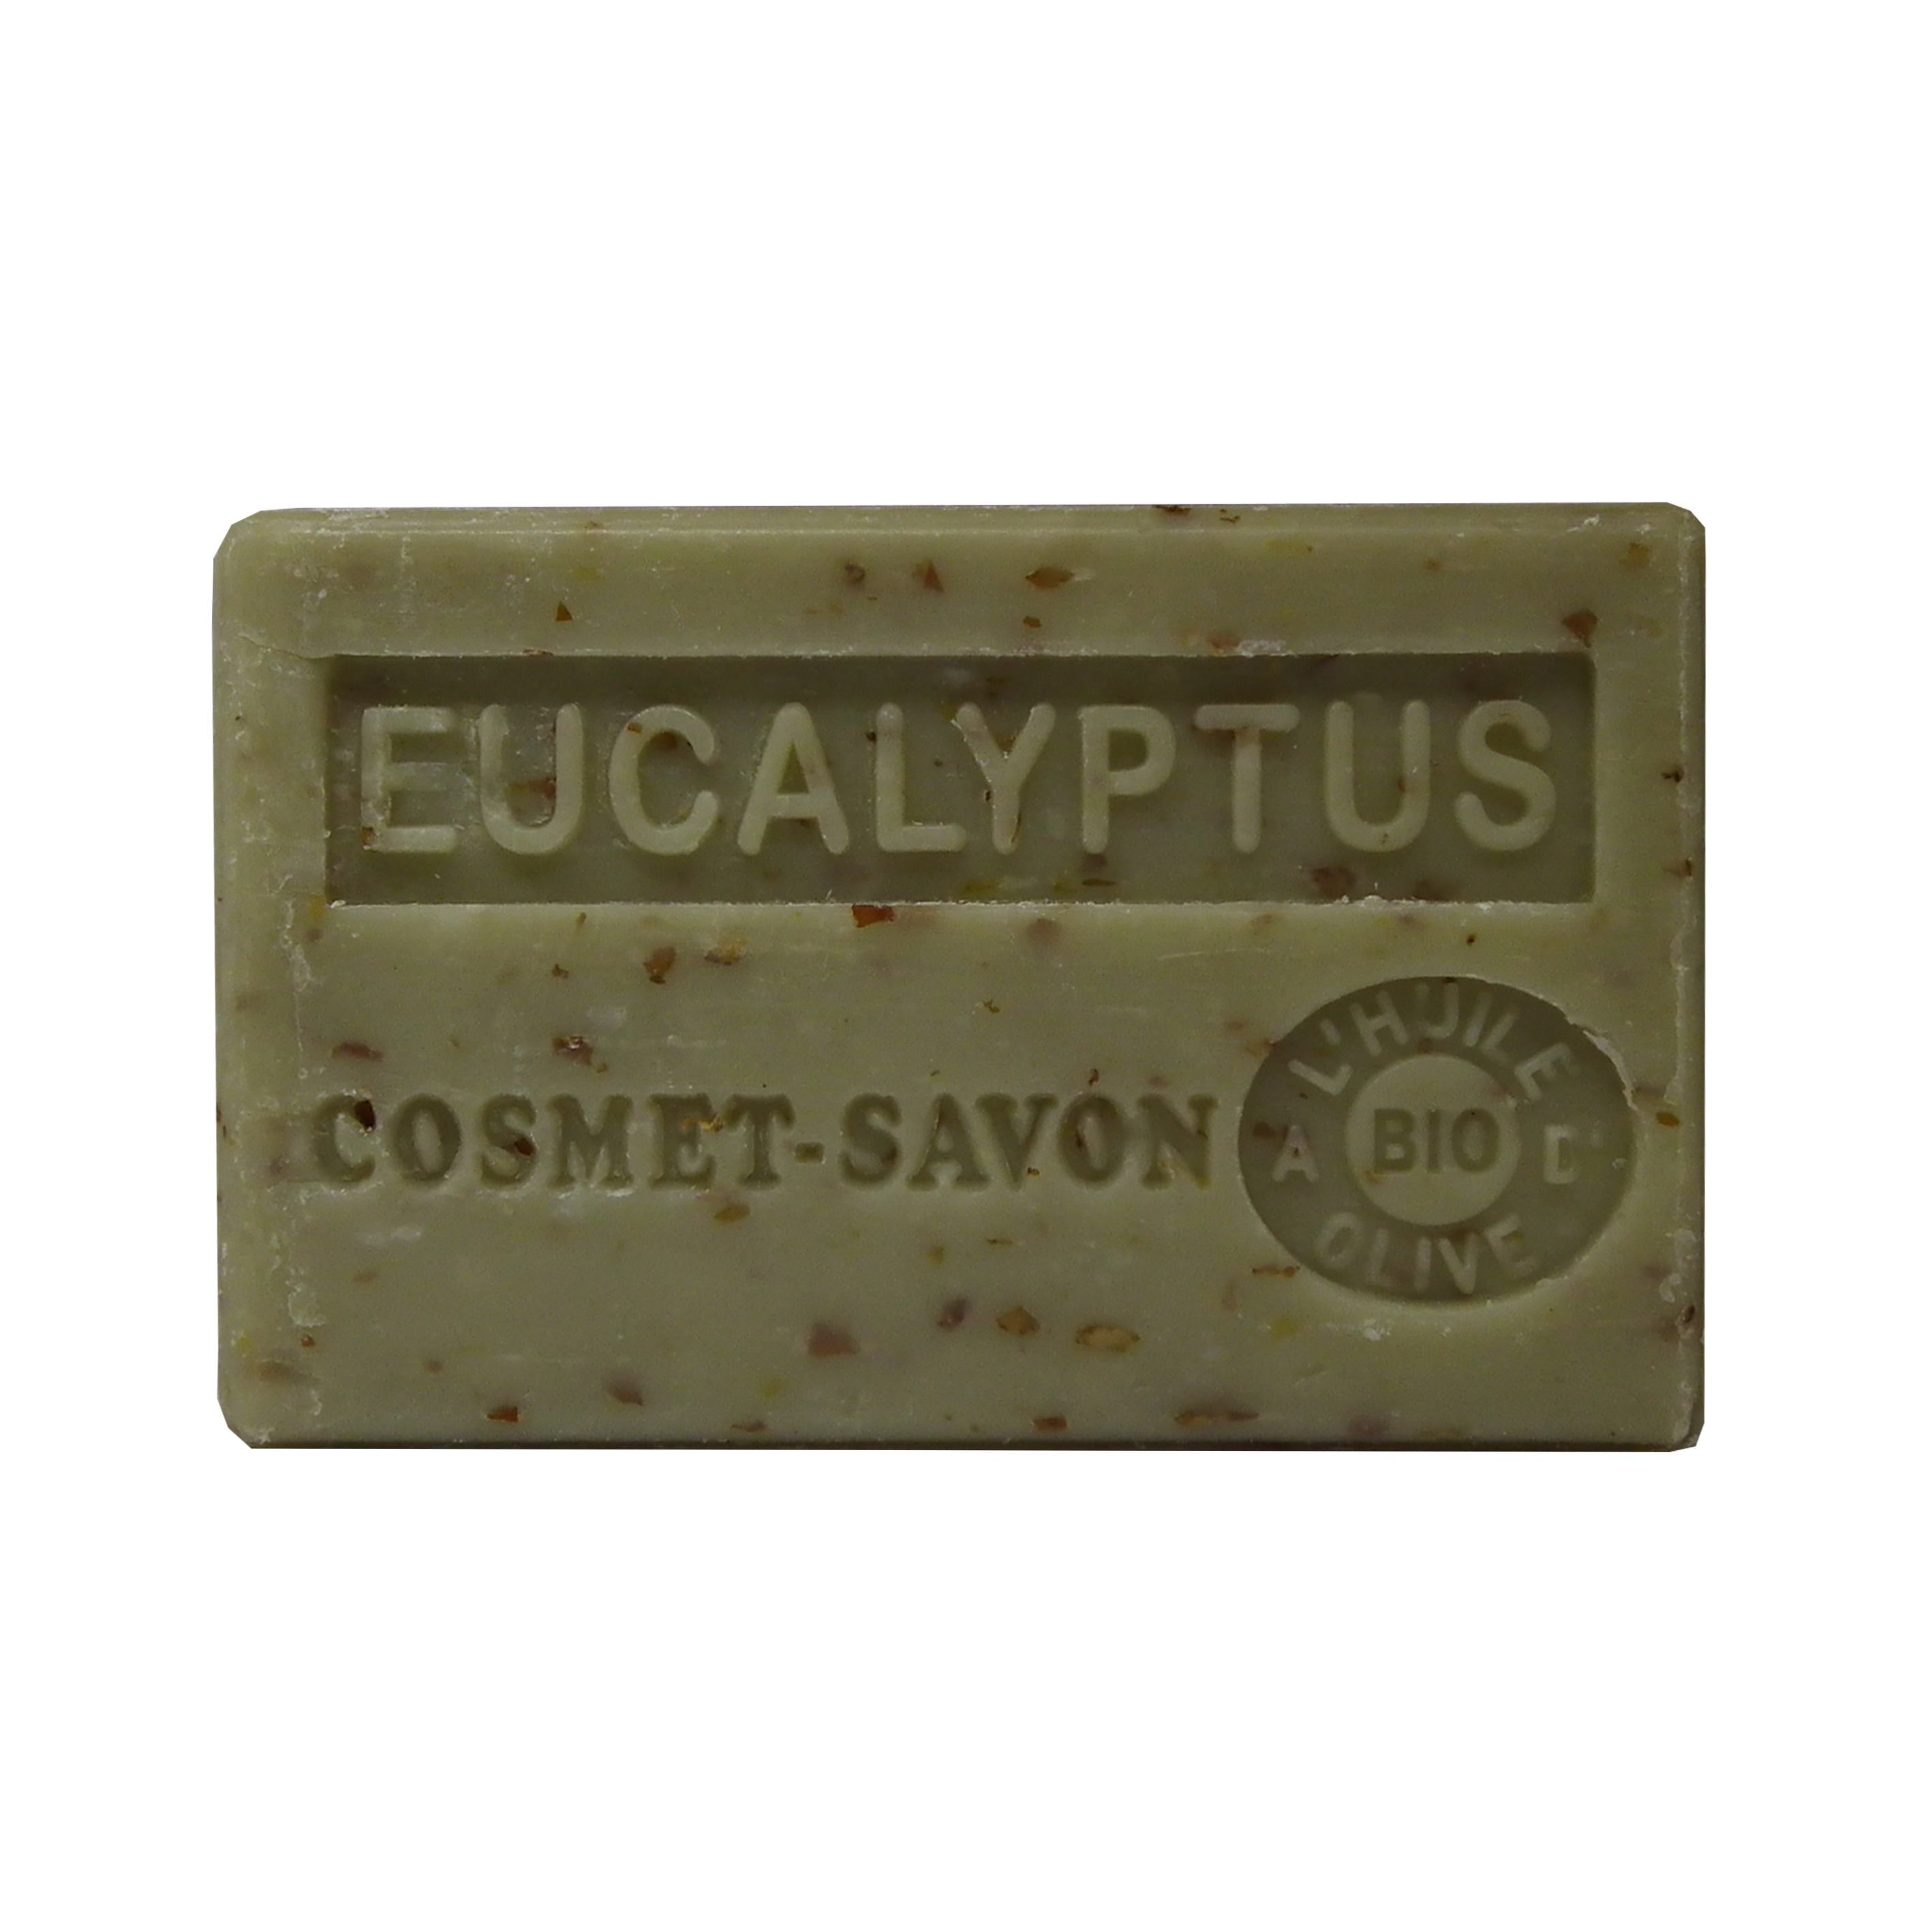 eucalyptus-exfoliant-savon-125gr-au-beurre-de-karite-bio-cosmet-savon-3665205006263-face-JPEG